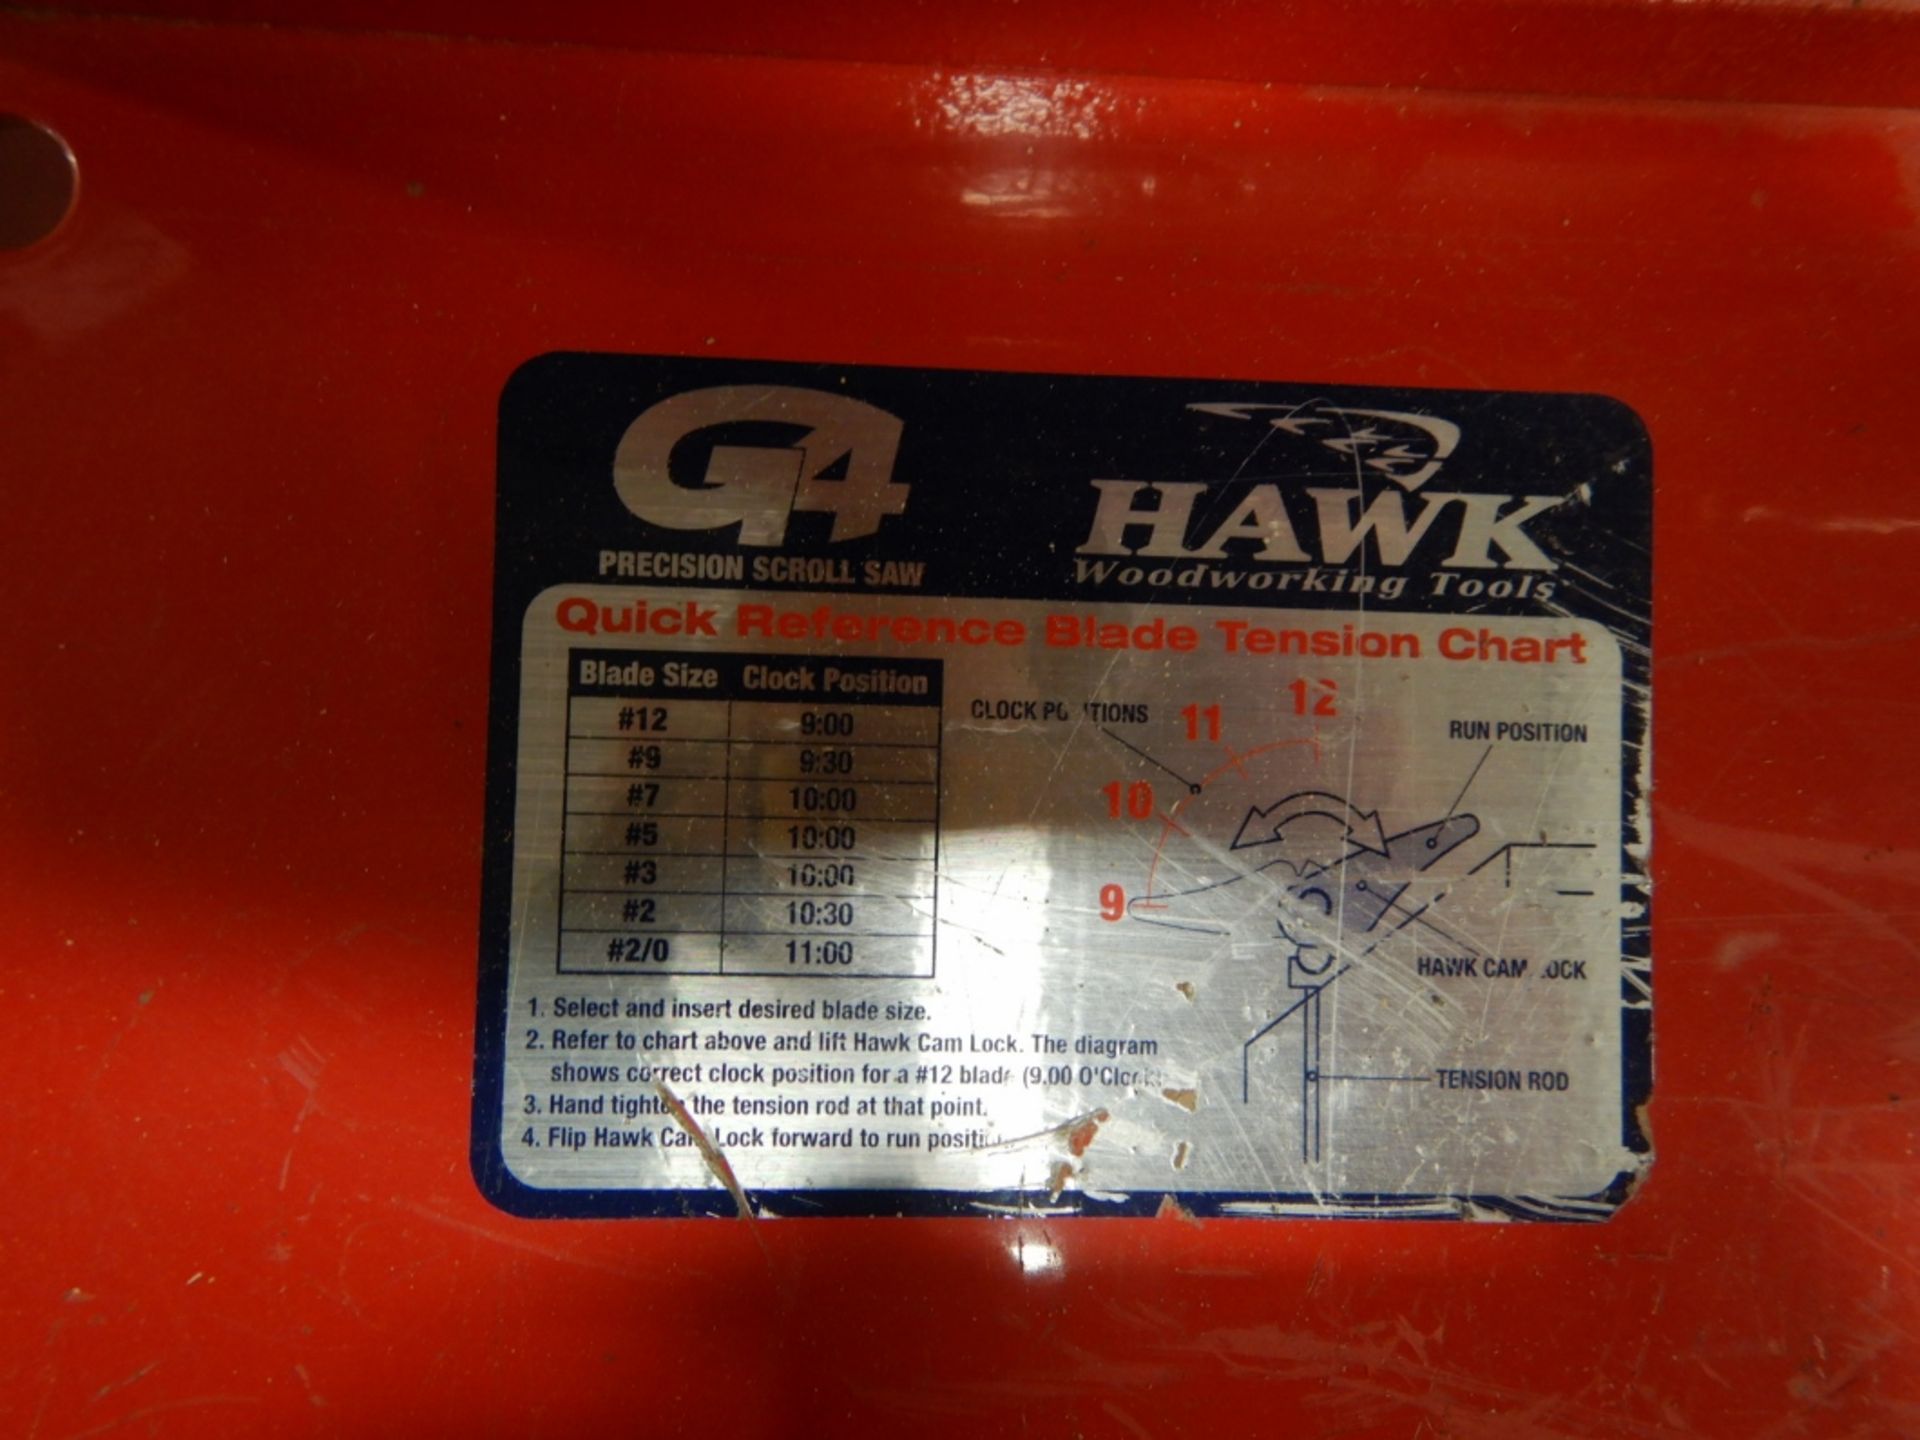 HAWK PRECISION SCROLL SAW, MODEL G426, S/N 3194 - Image 4 of 4